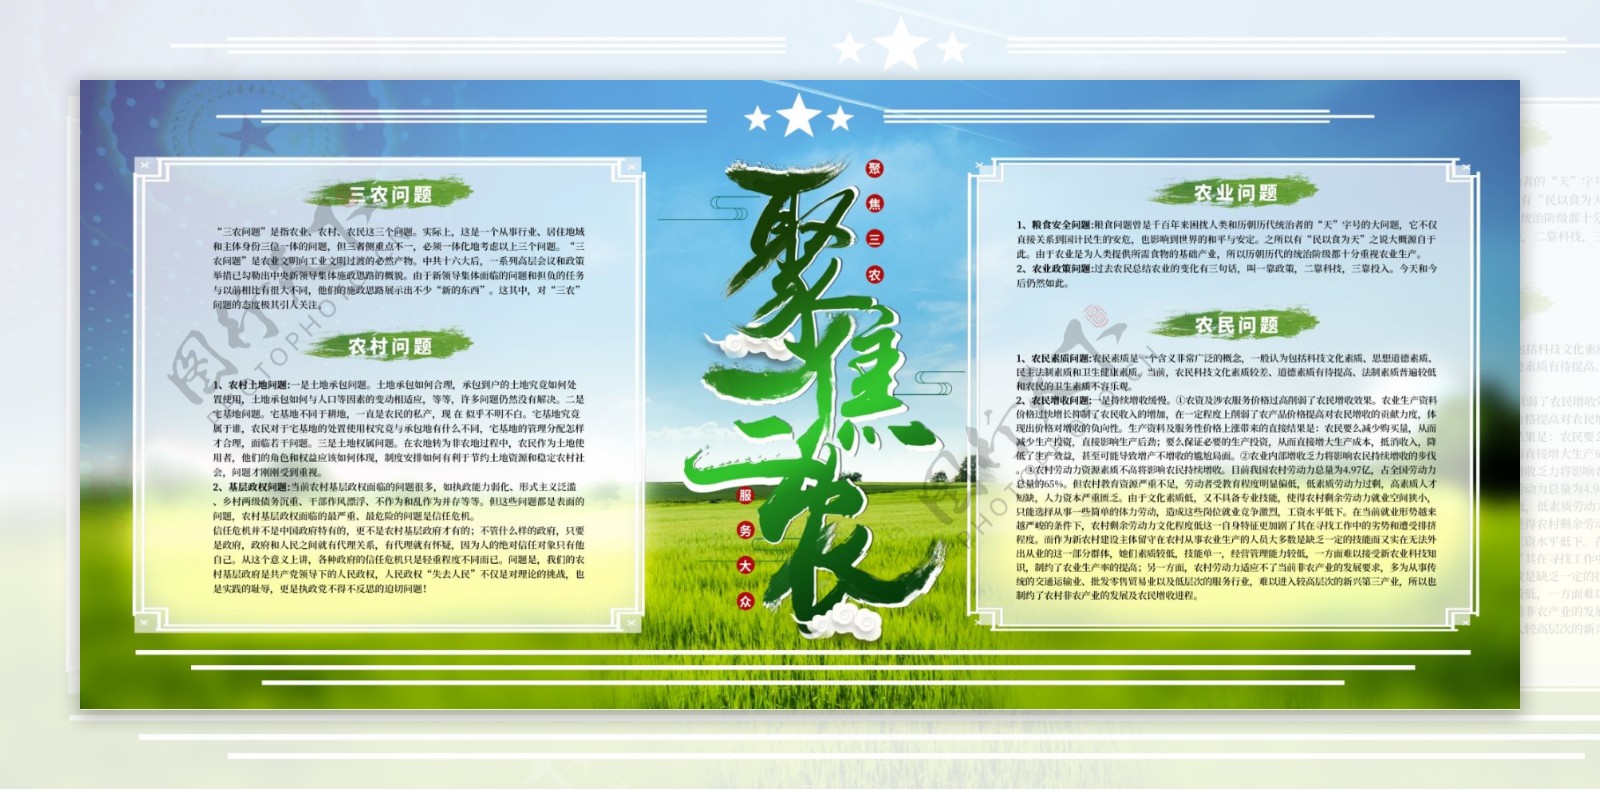 聚焦三农绿色主题创意字体设计党建宣传展板